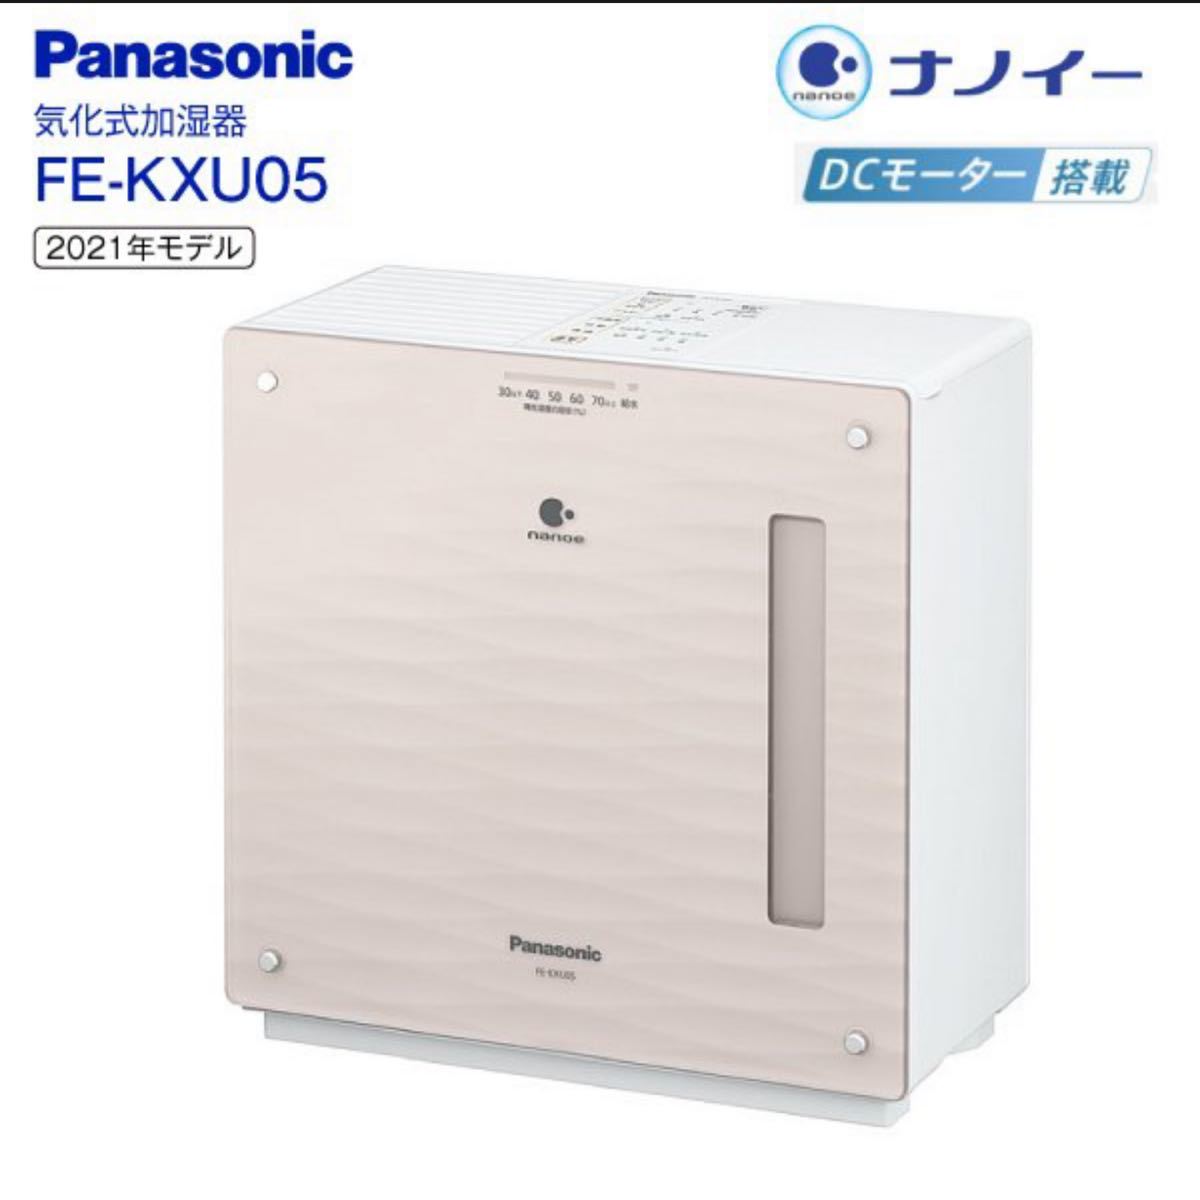 かモード Panasonic FE-KXR05-W nARf3-m92002425863 気化式加湿器